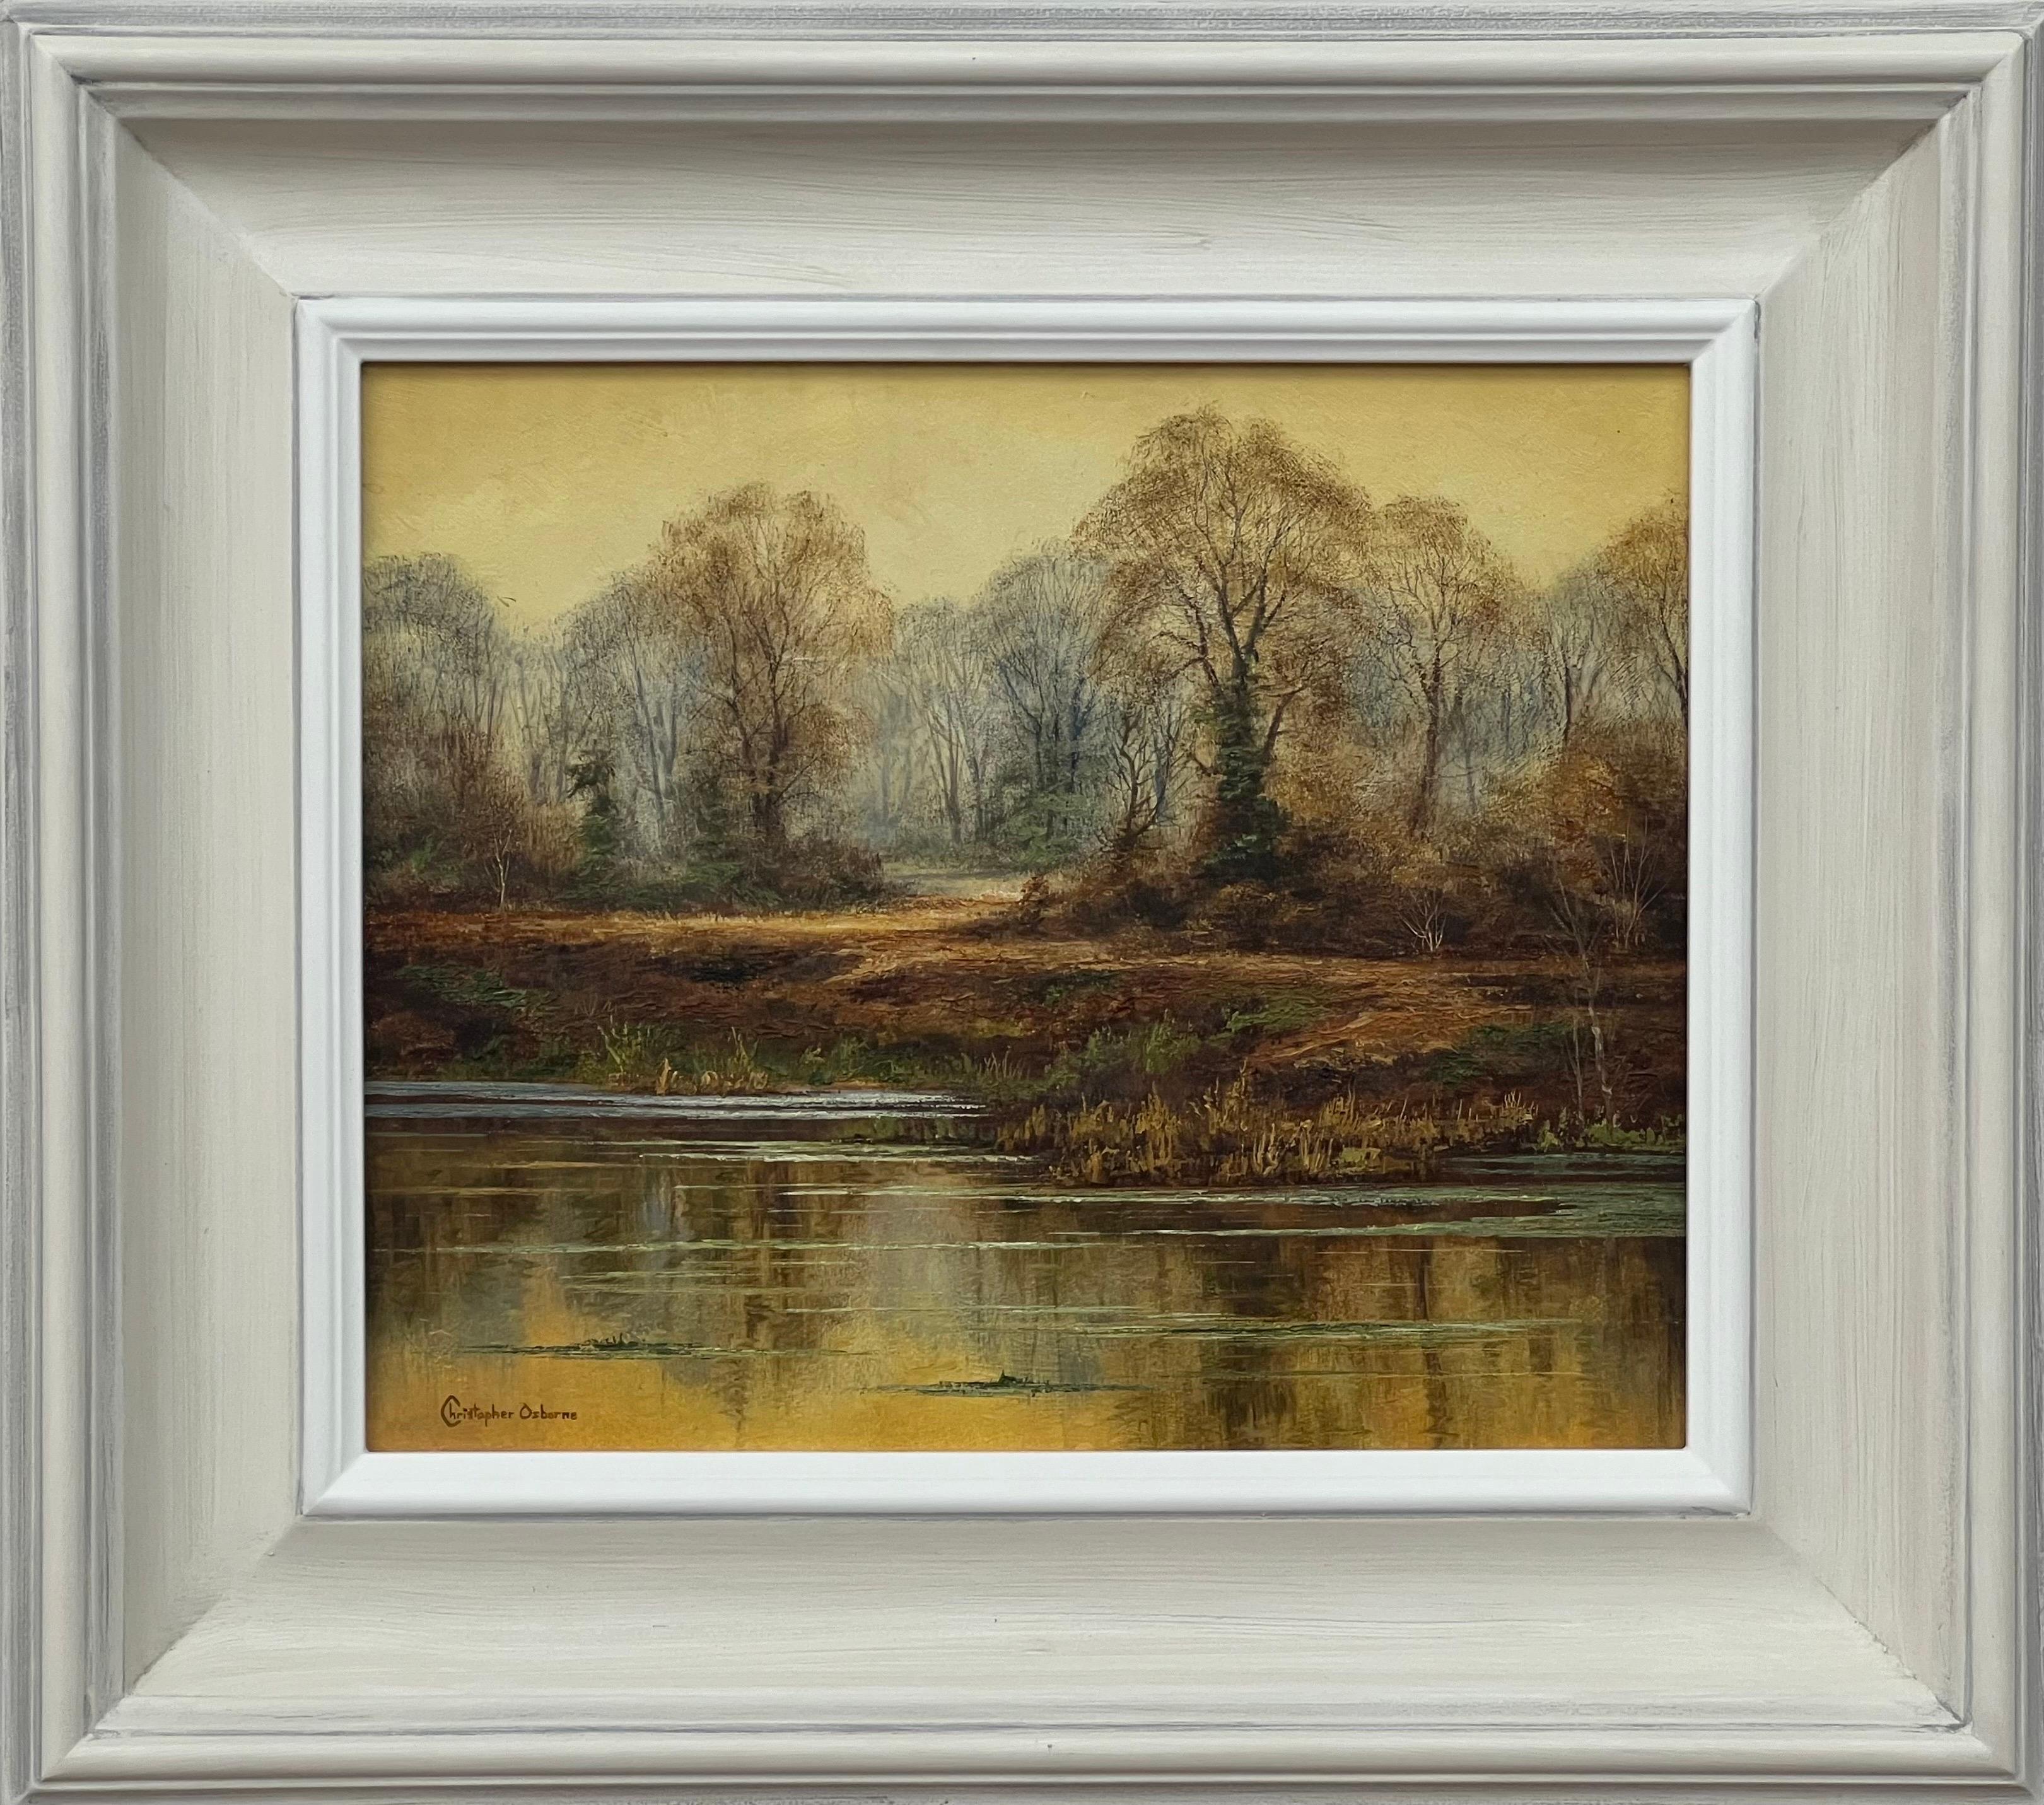 Landscape Painting Christopher Osborne - The Reflections on Forest Pond in the English Countryside with Warm Yellows & Browns (Réflexions sur un étang de forêt dans la campagne anglaise avec des jaunes et des bruns chauds)